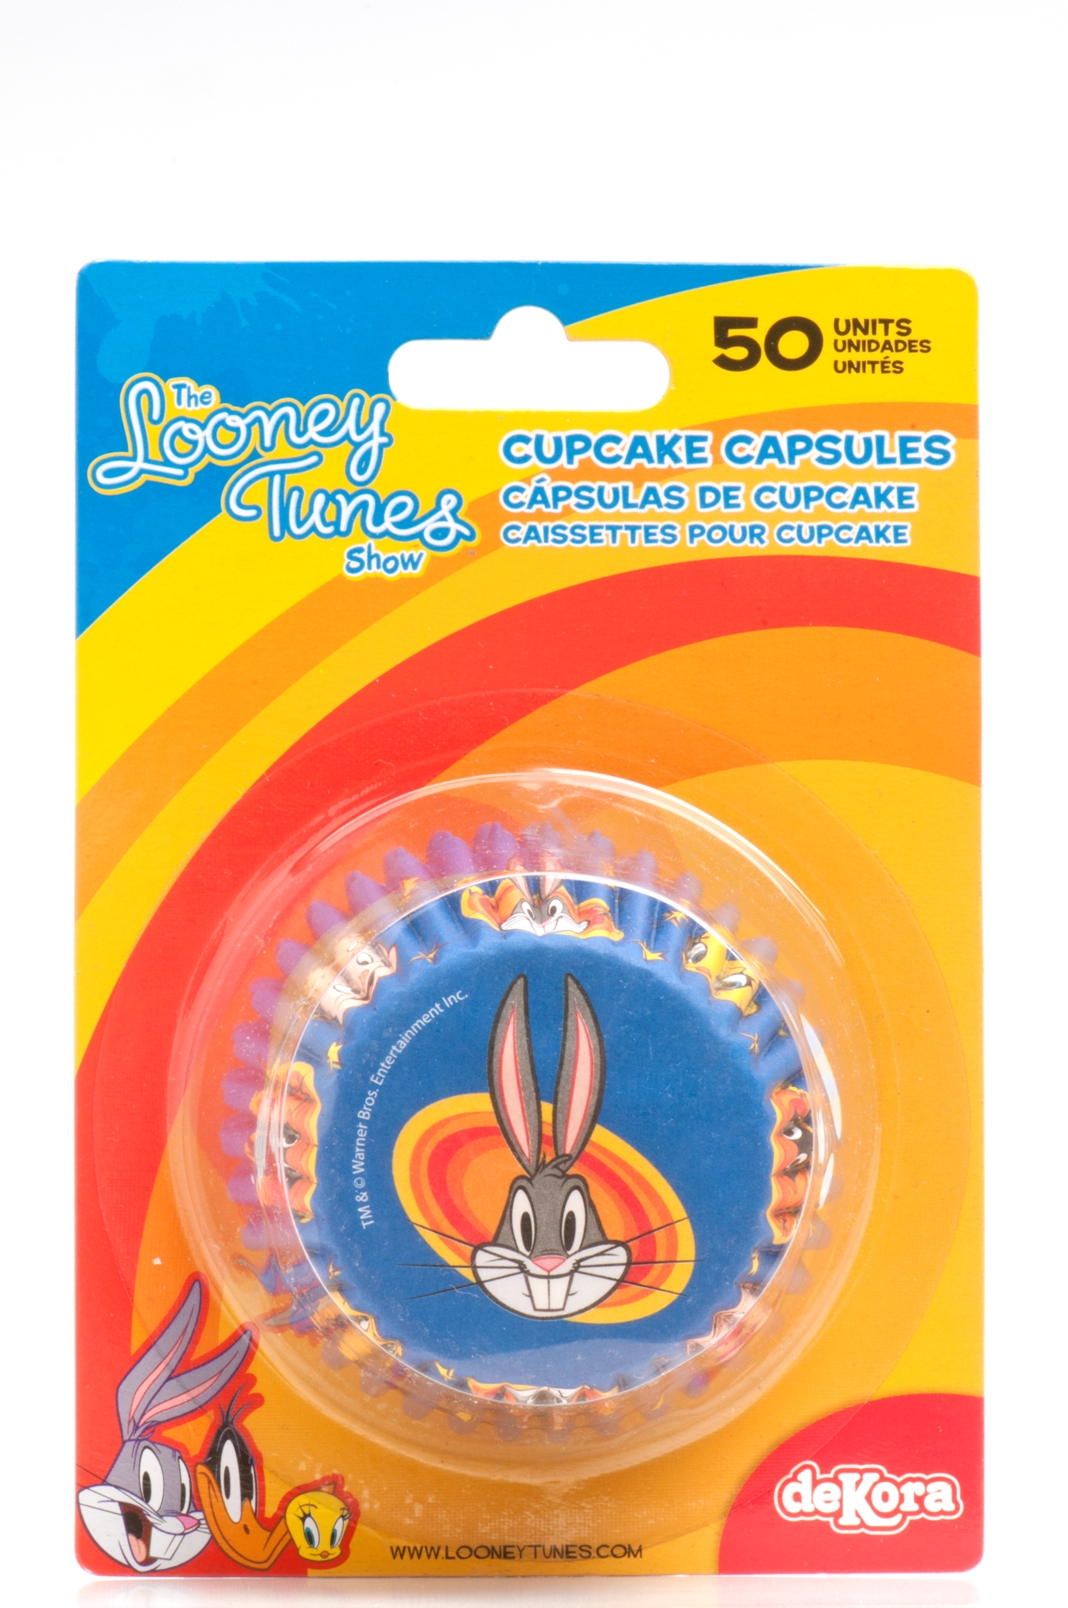 Capsules cupcake Looney Tunes 5 cm